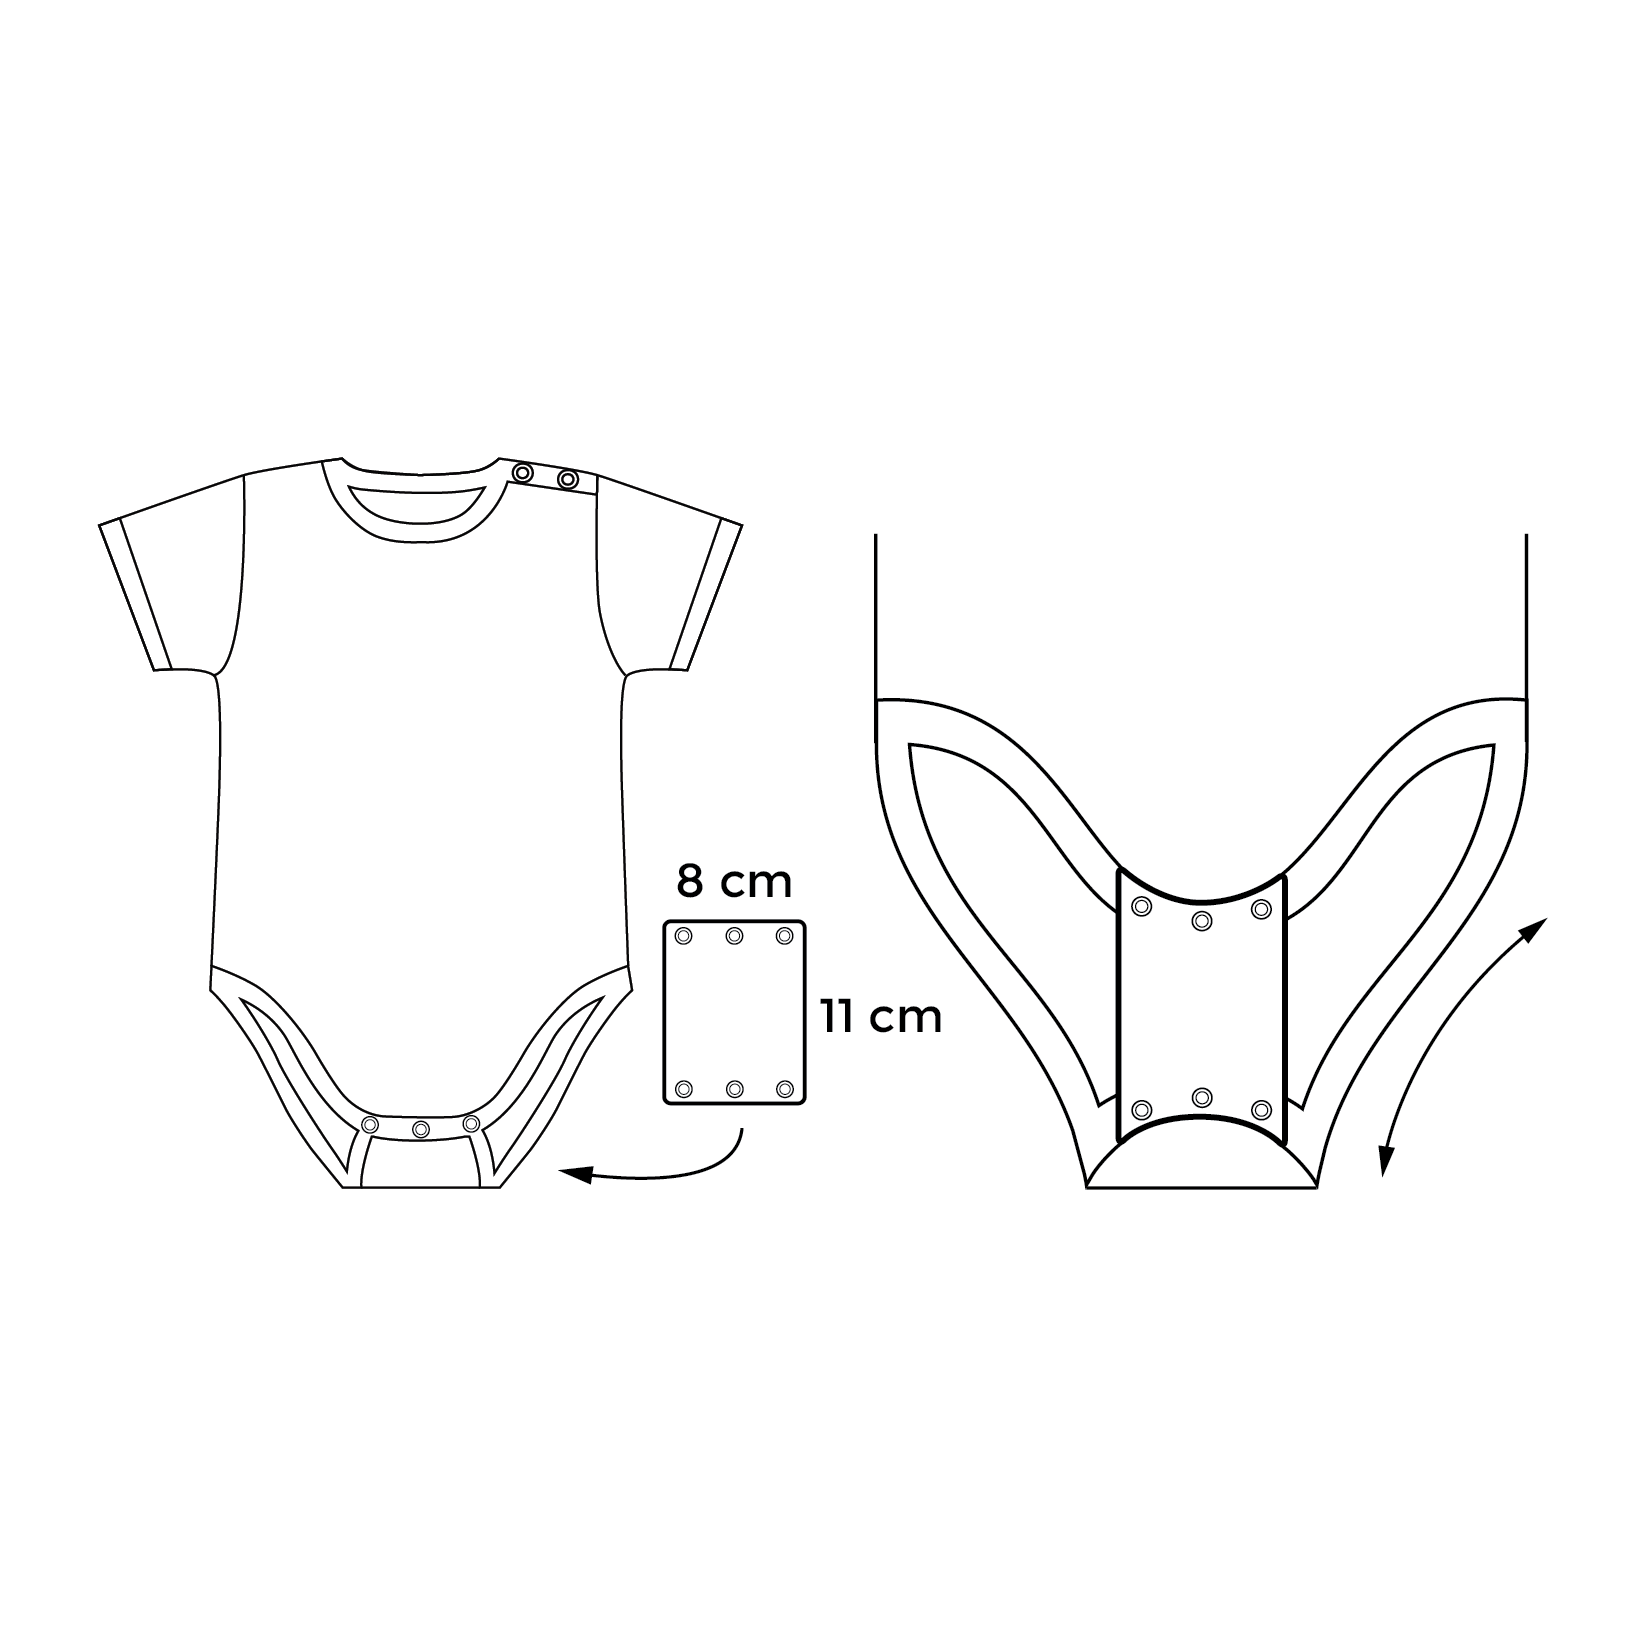 Single bodysuit extender